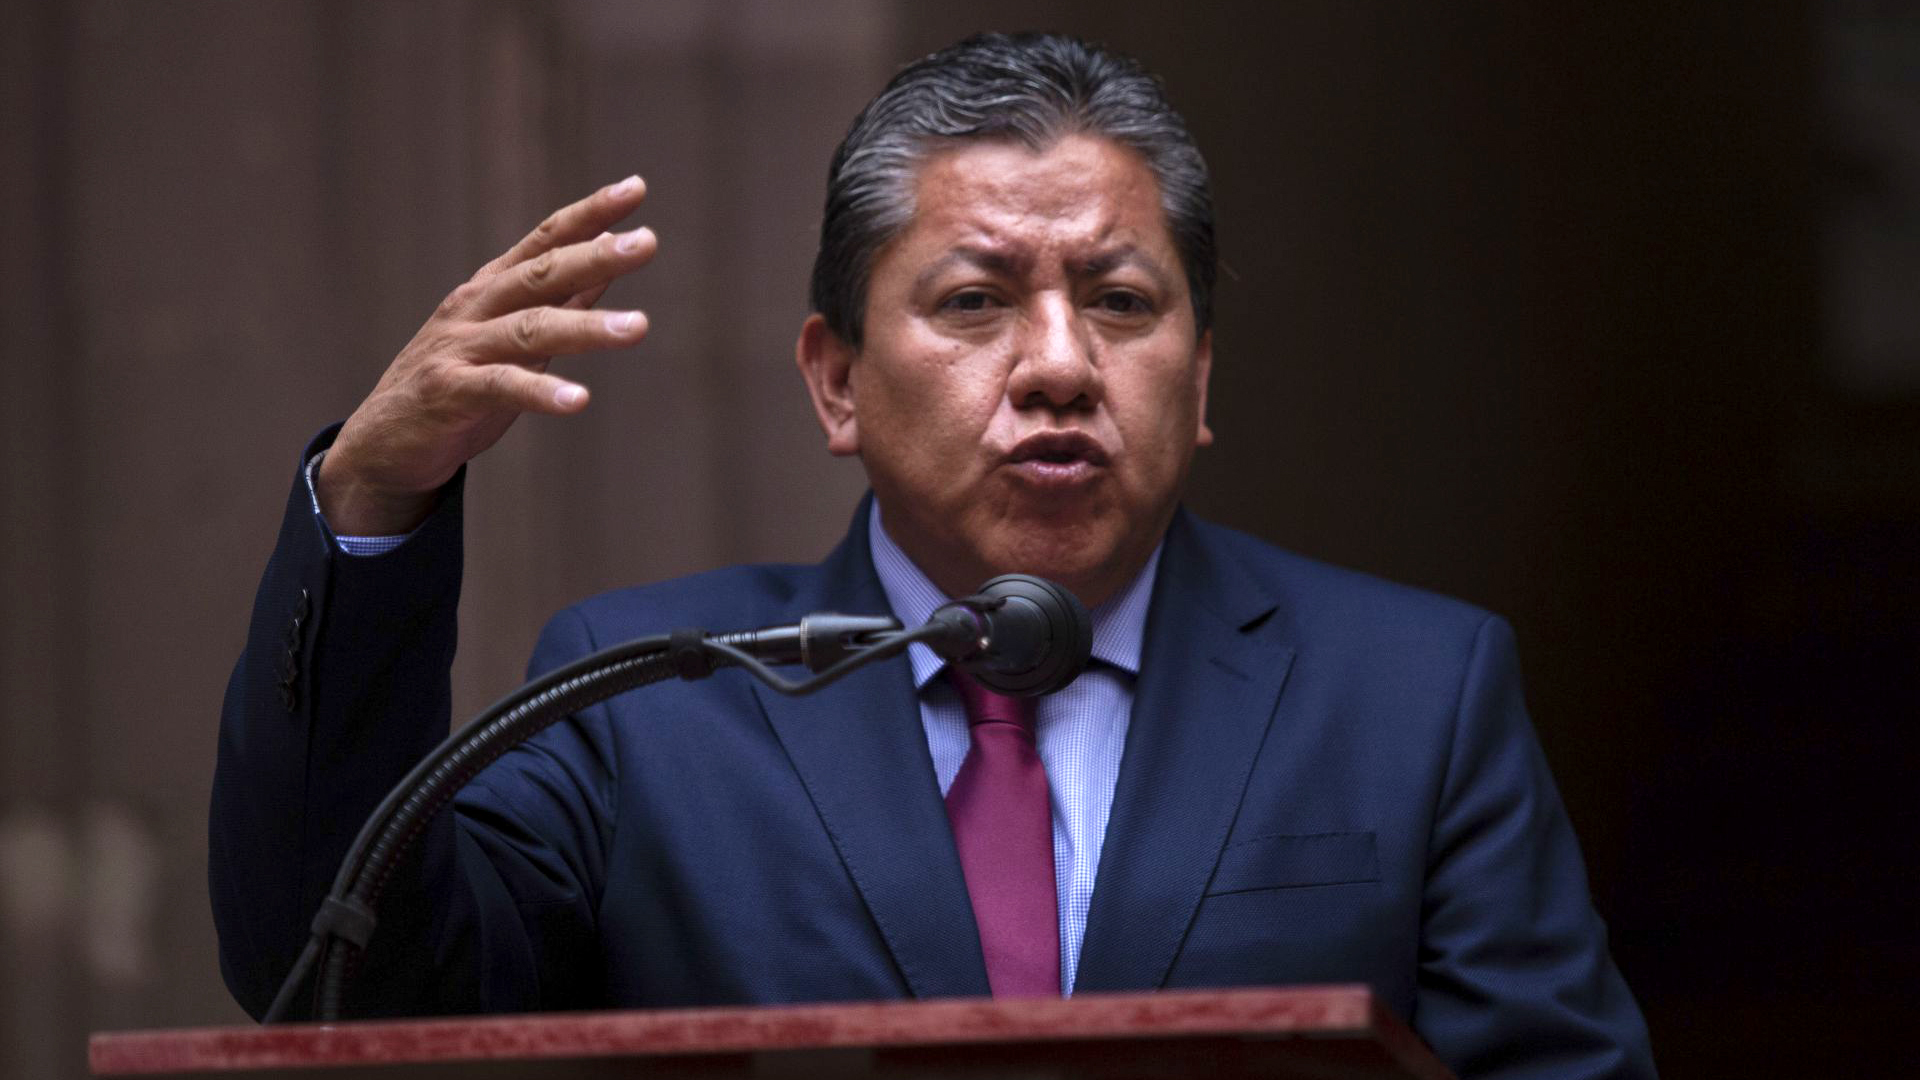 El gobernador de Zacatecas fue duramente criticado por atacar a los medios de comunicación

Foto: Adolfo Vladimir/Cuartoscuro